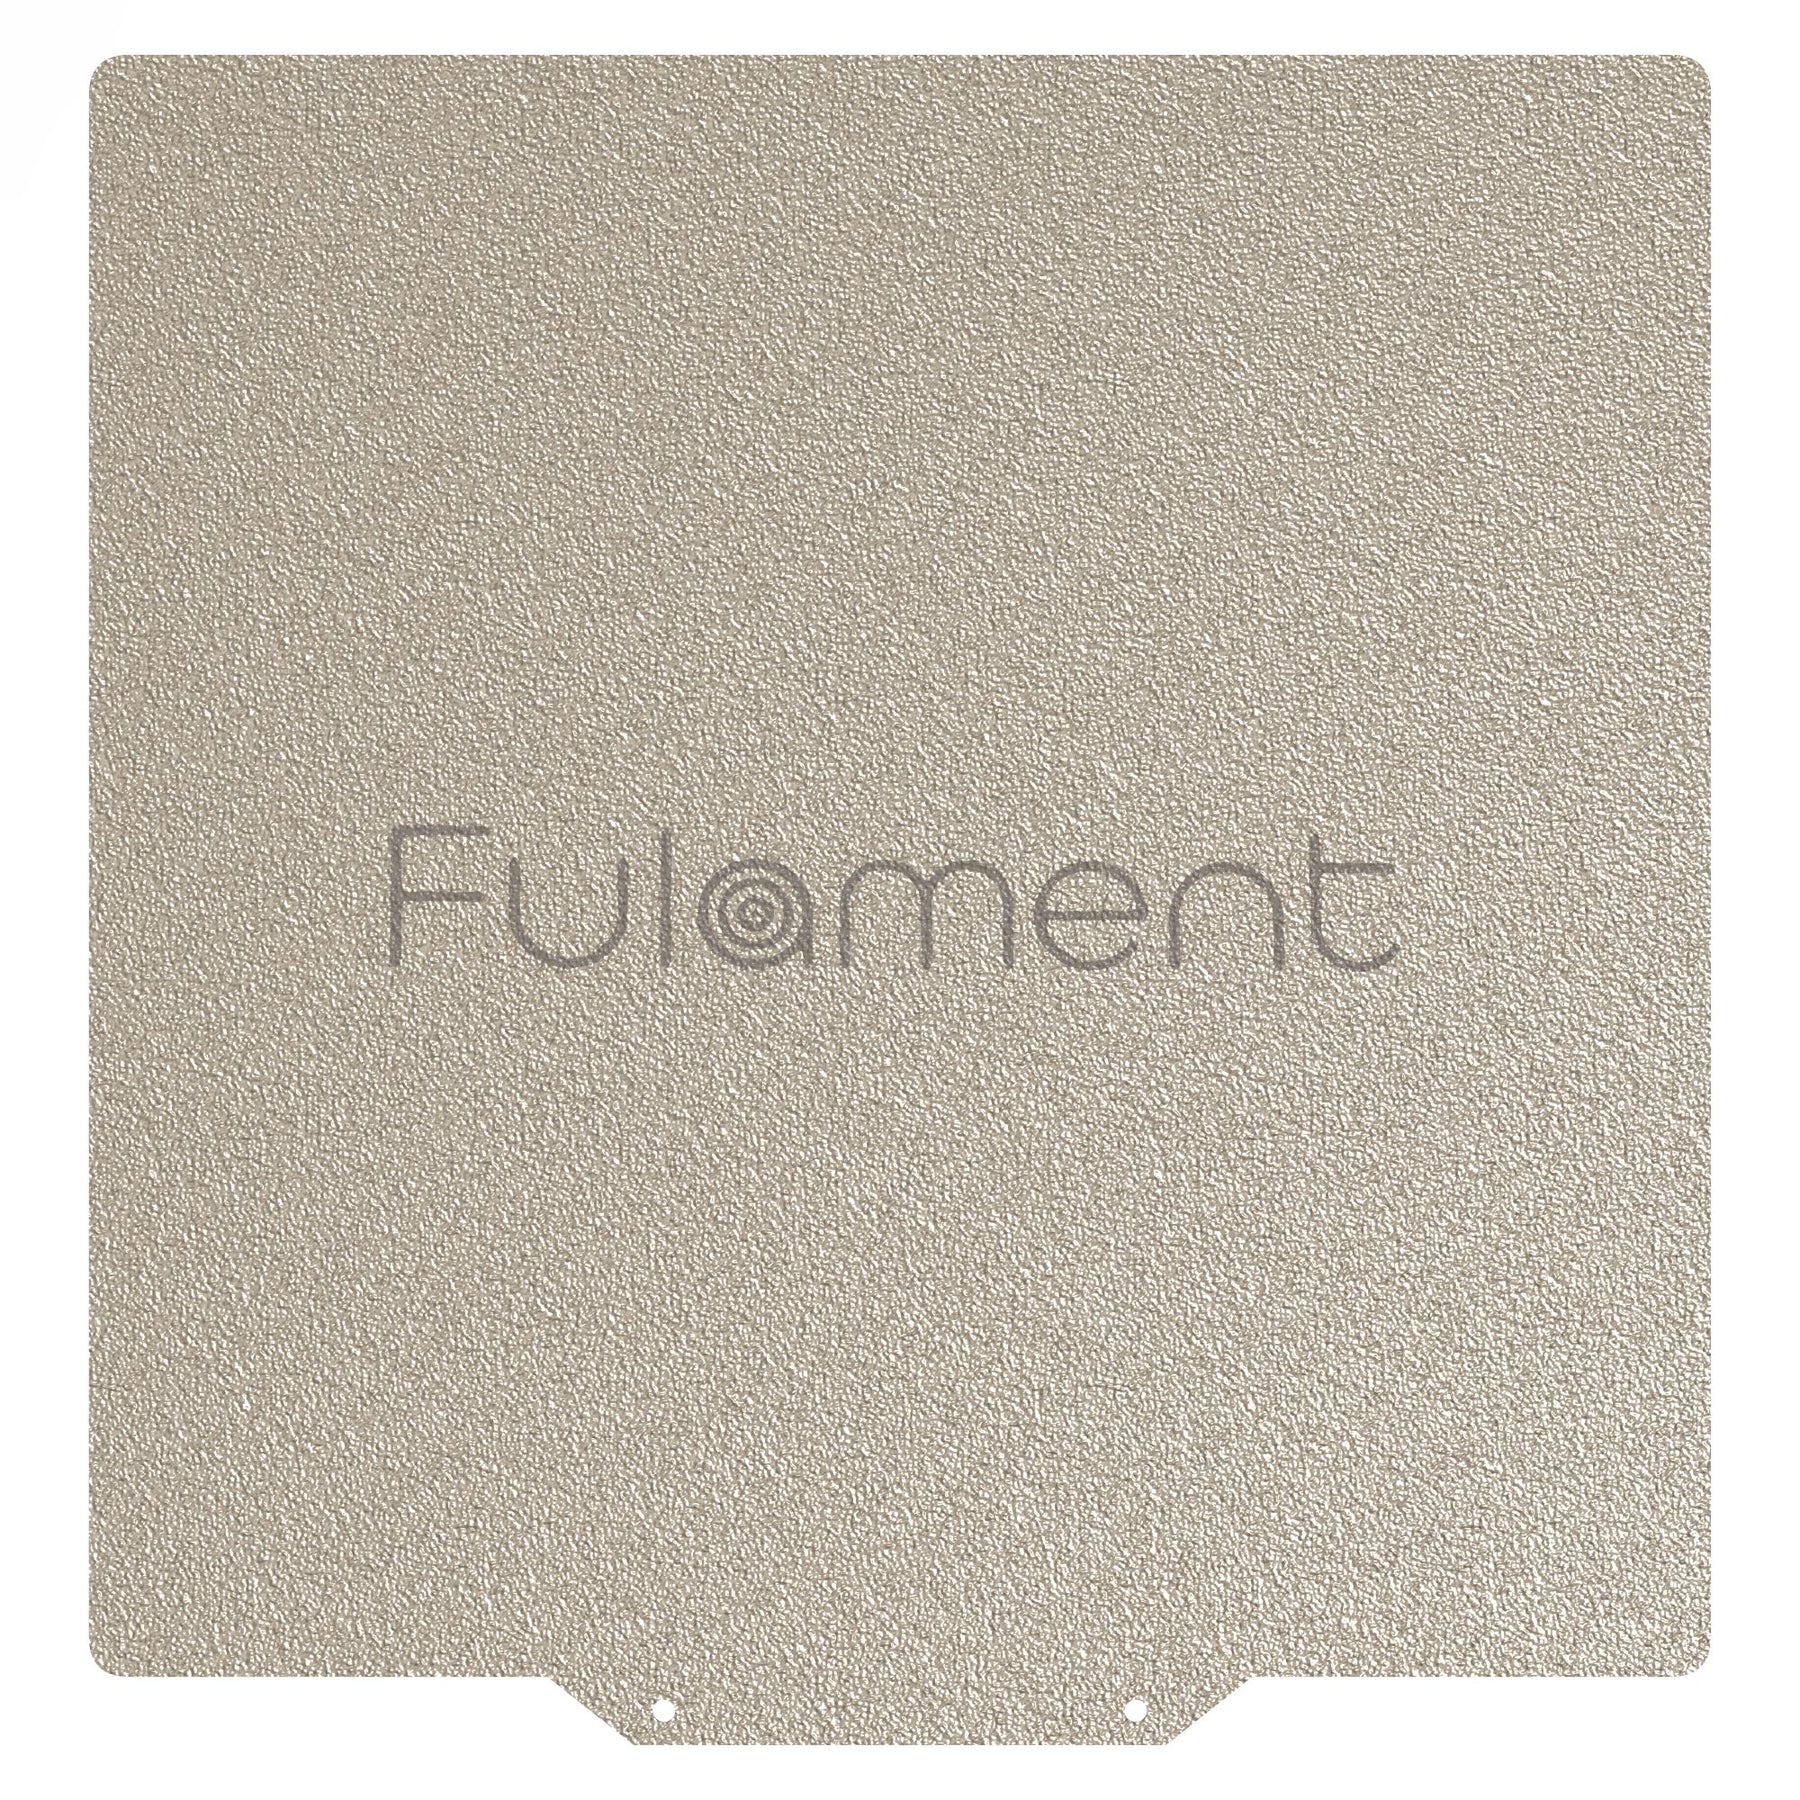 Snapmaker Fula-Flex 2.0 Fulament